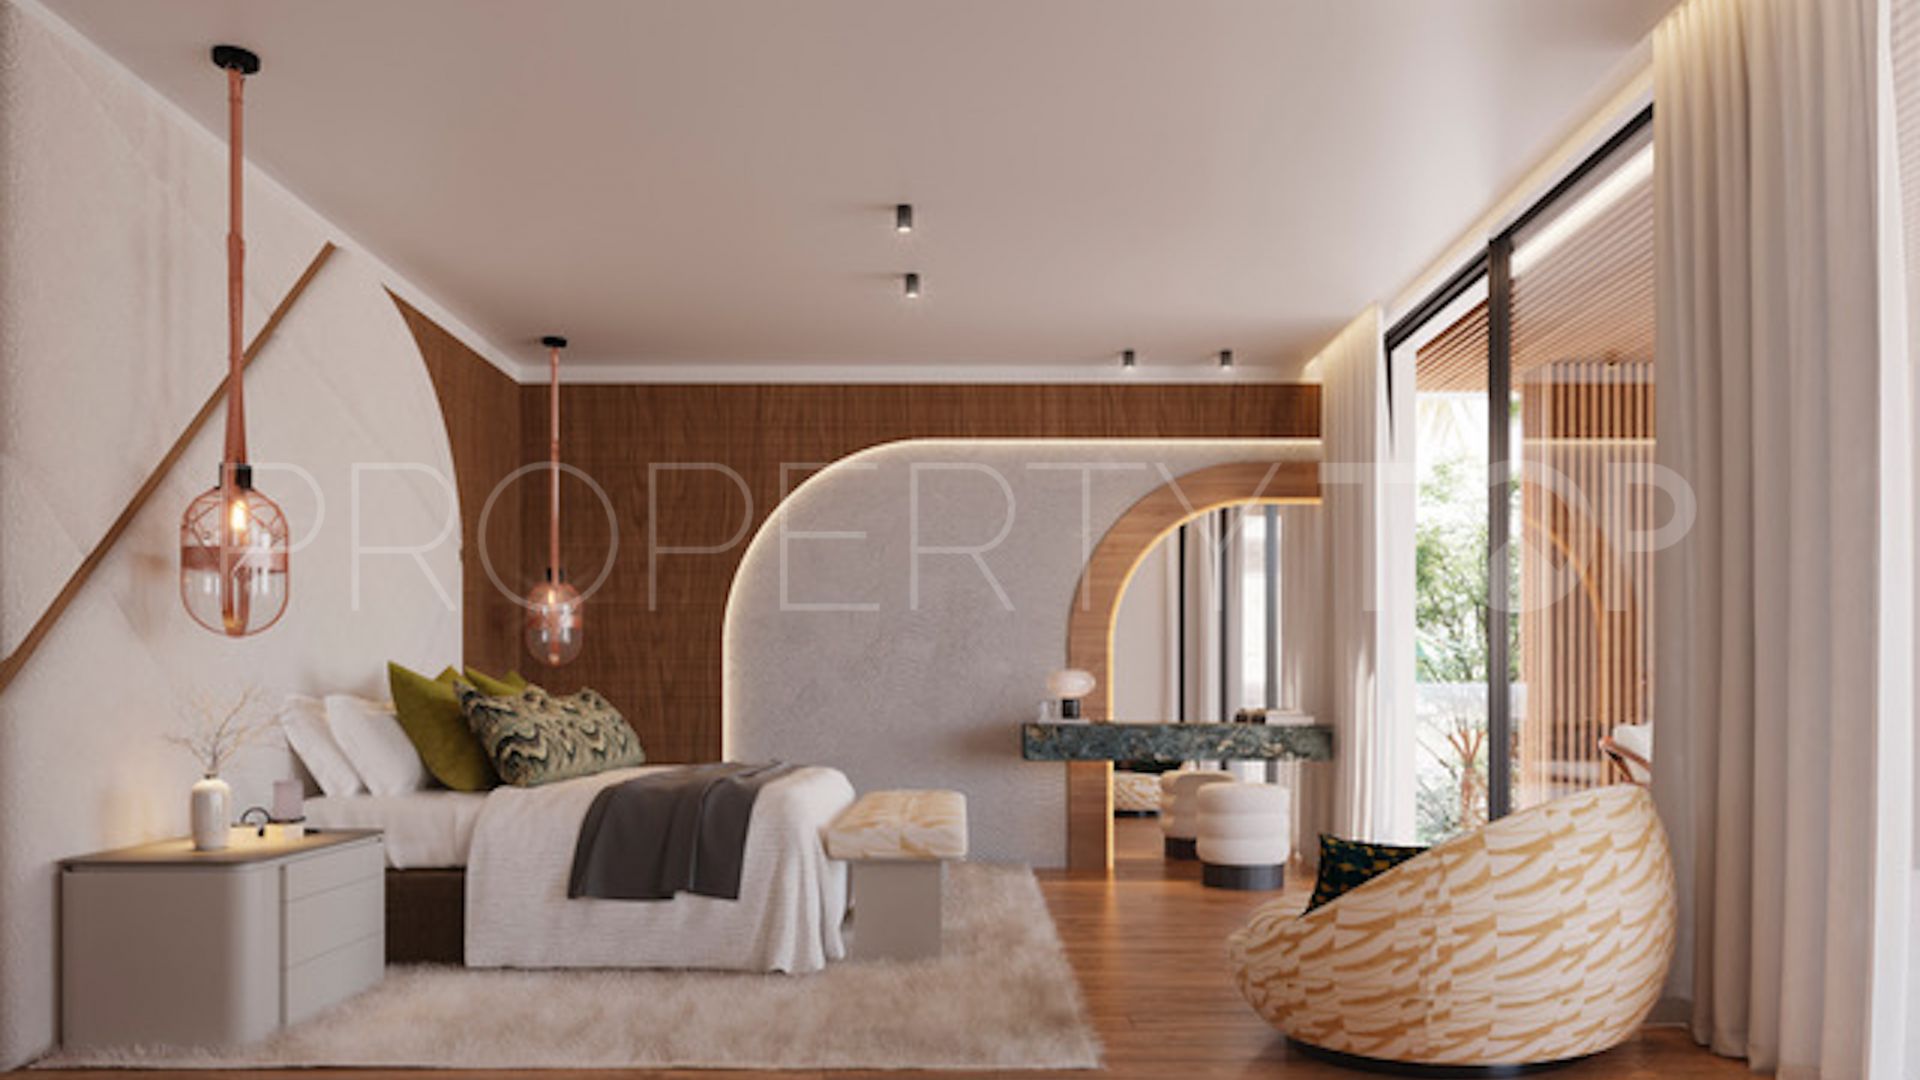 Cortijo Blanco 4 bedrooms villa for sale